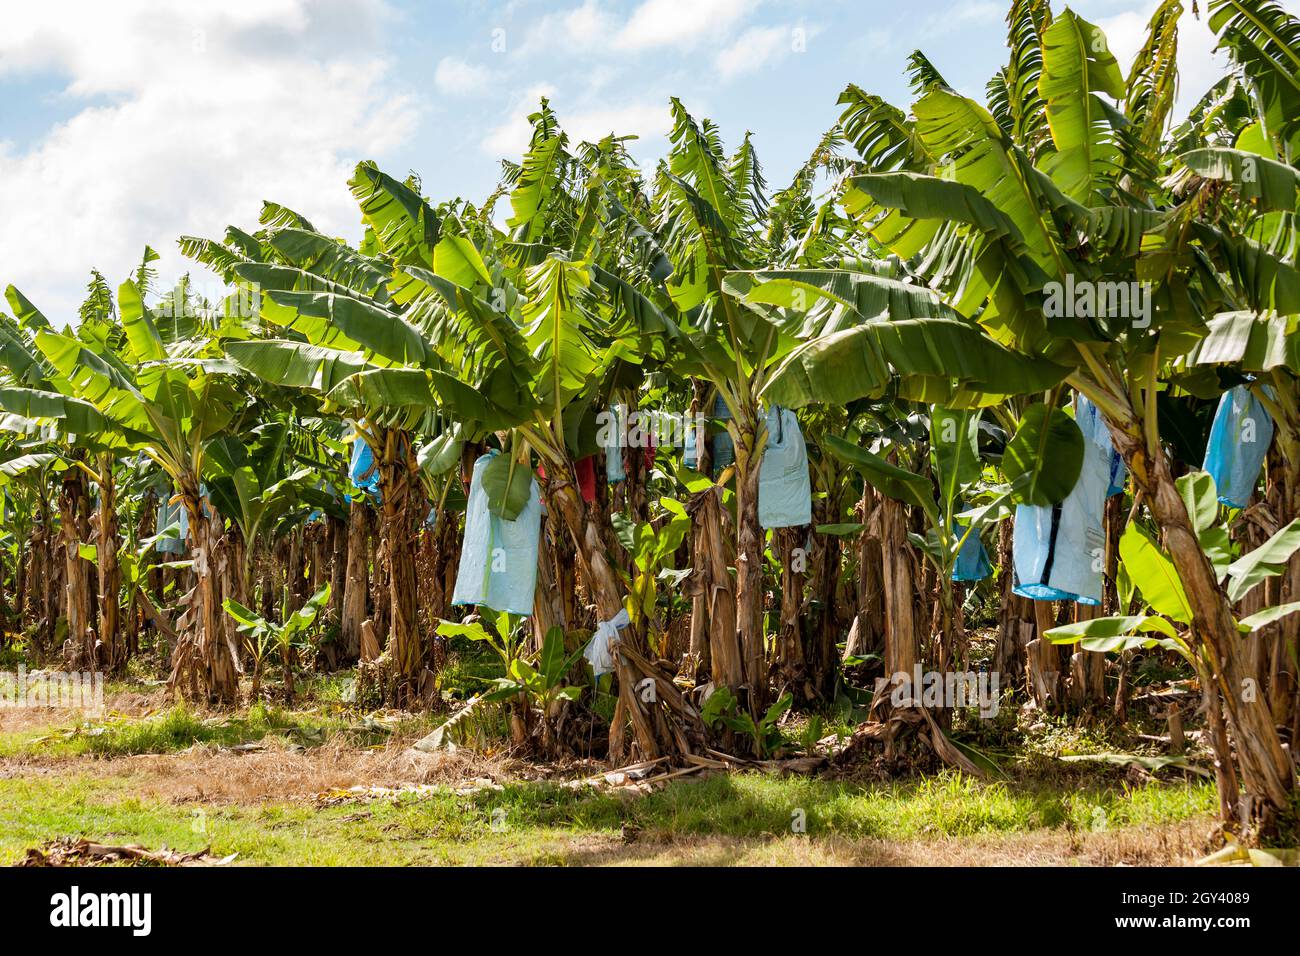 Piantagione di banane gli alberi hanno borse per proteggere il frutto da danni causati da insetti e altri animali, strofinando contro le foglie o dal ap Foto Stock